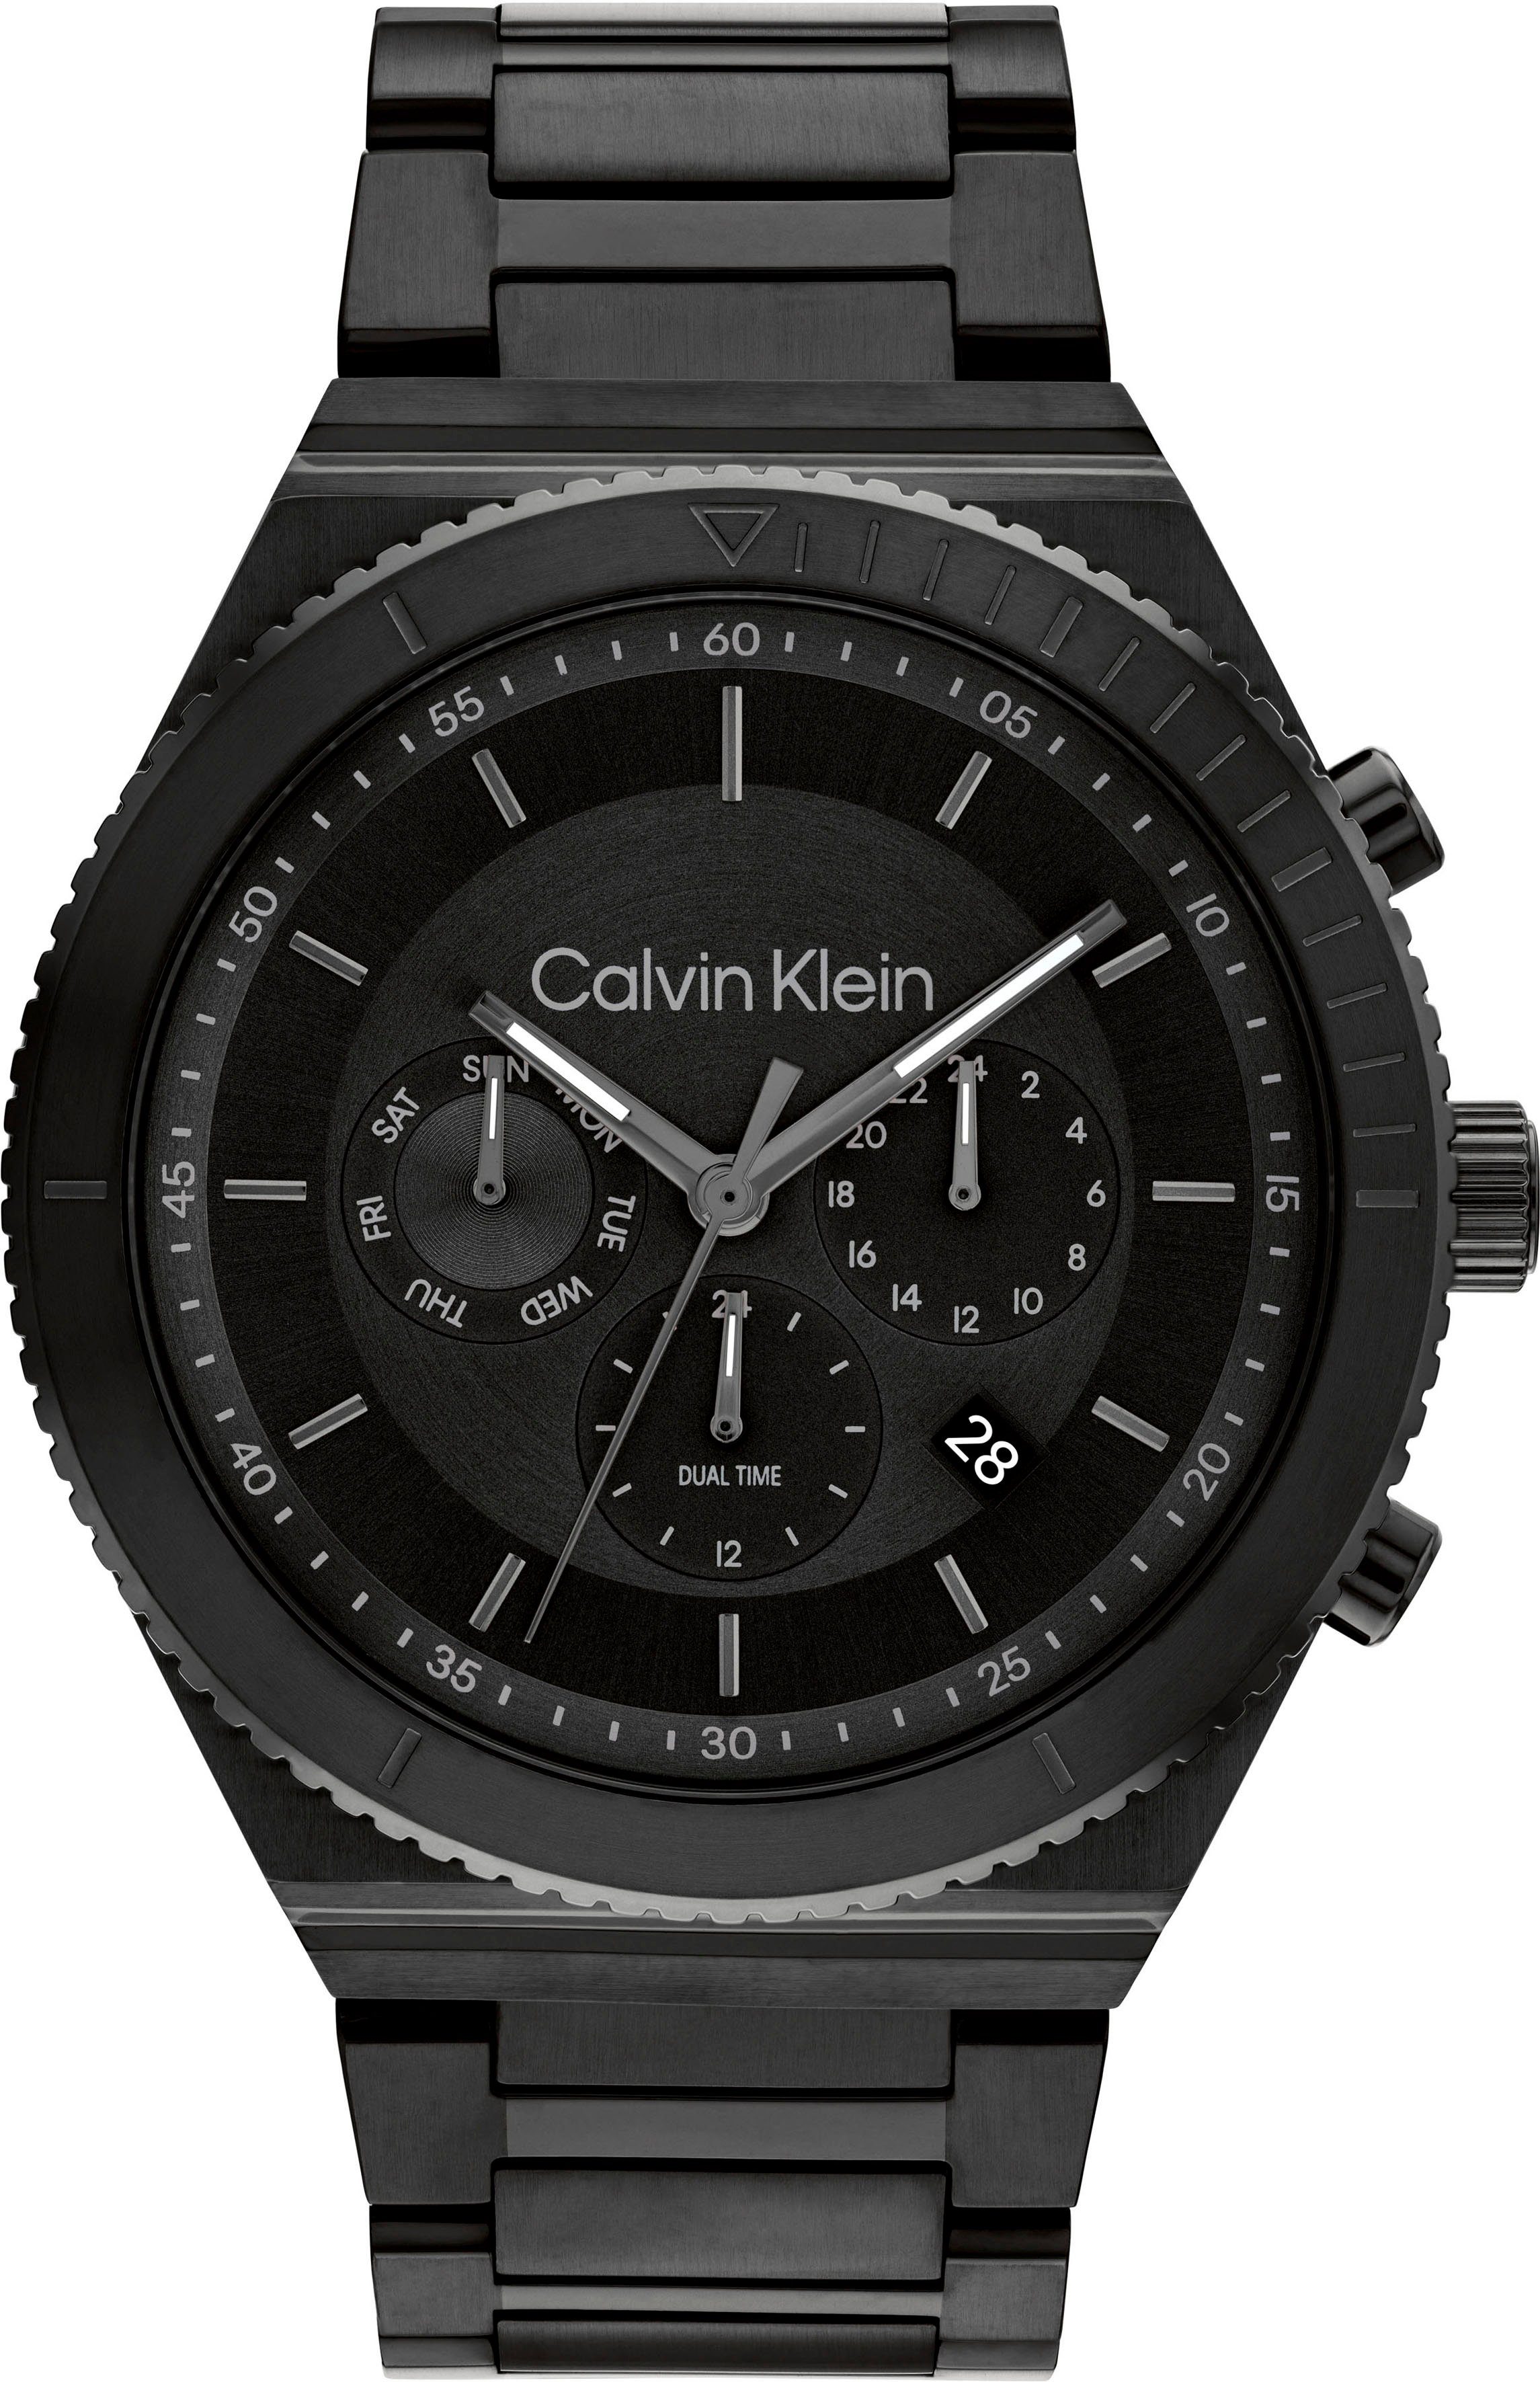 Calvin Klein Multifunktionsuhr SPORT, 25200303, Quarzuhr, Armbanduhr, Herrenuhr, Datum, 12/24-Stunden-Anzeige